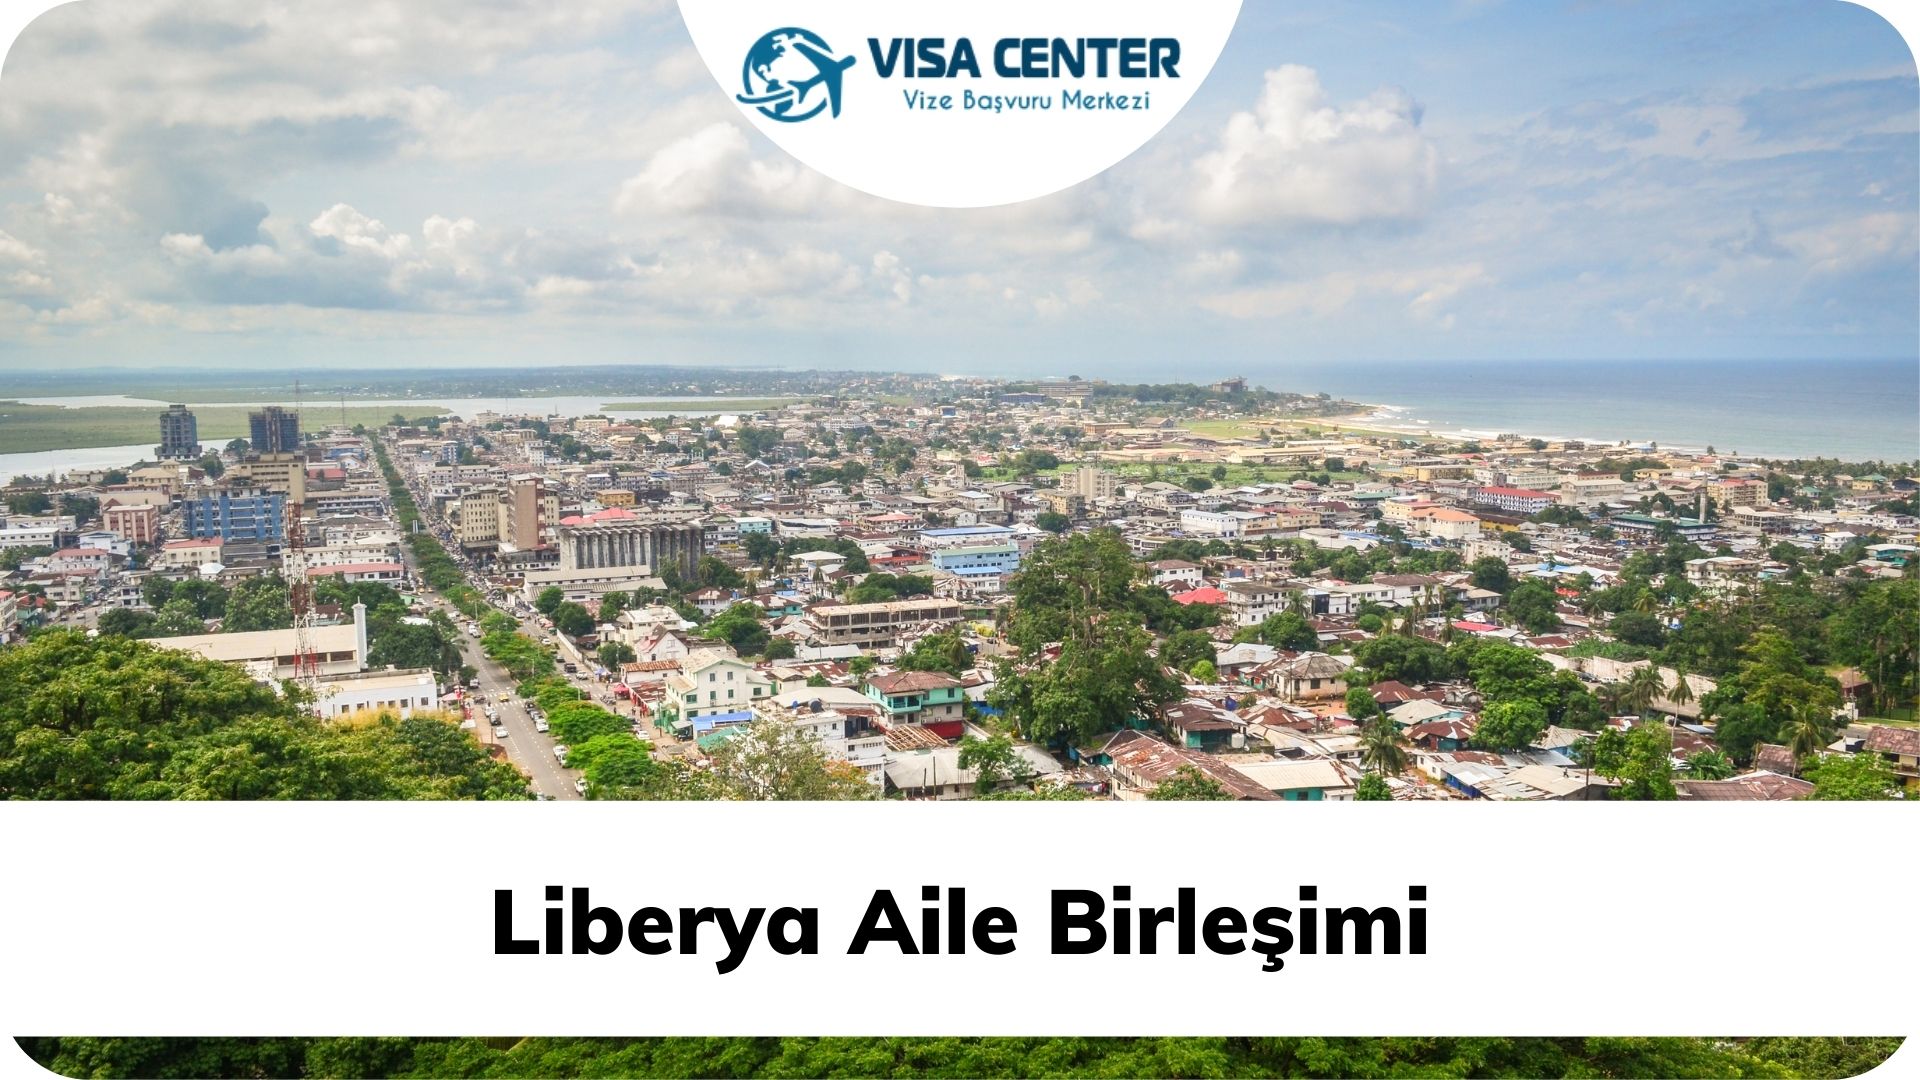 Liberya Aile Birleşimi